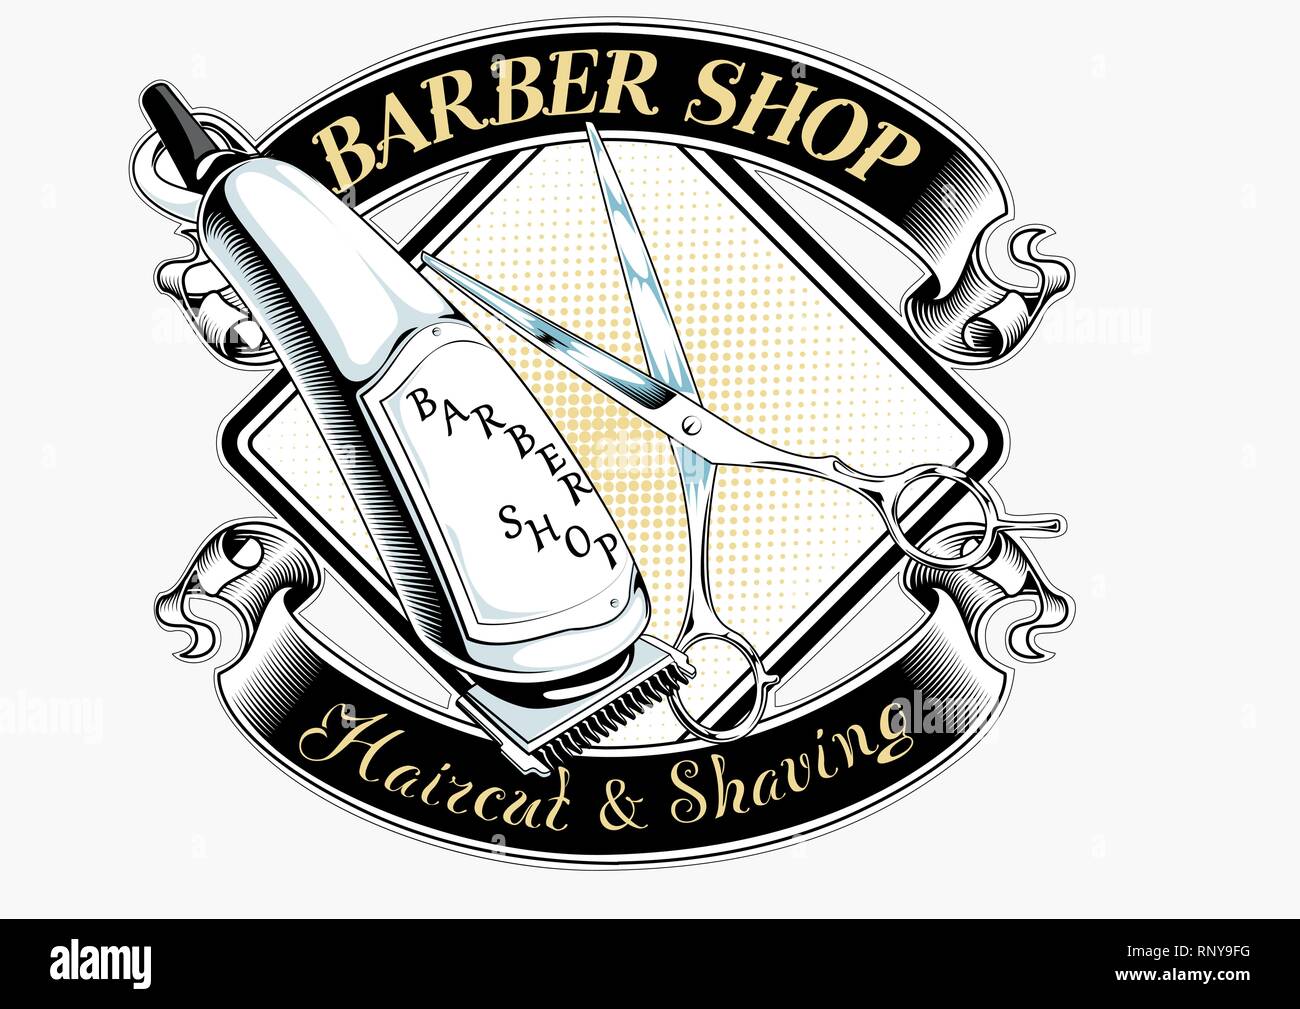 BARBER SHOP COMB STAND + BARBER SHOP STAMP - HAIRDRESSING SALON